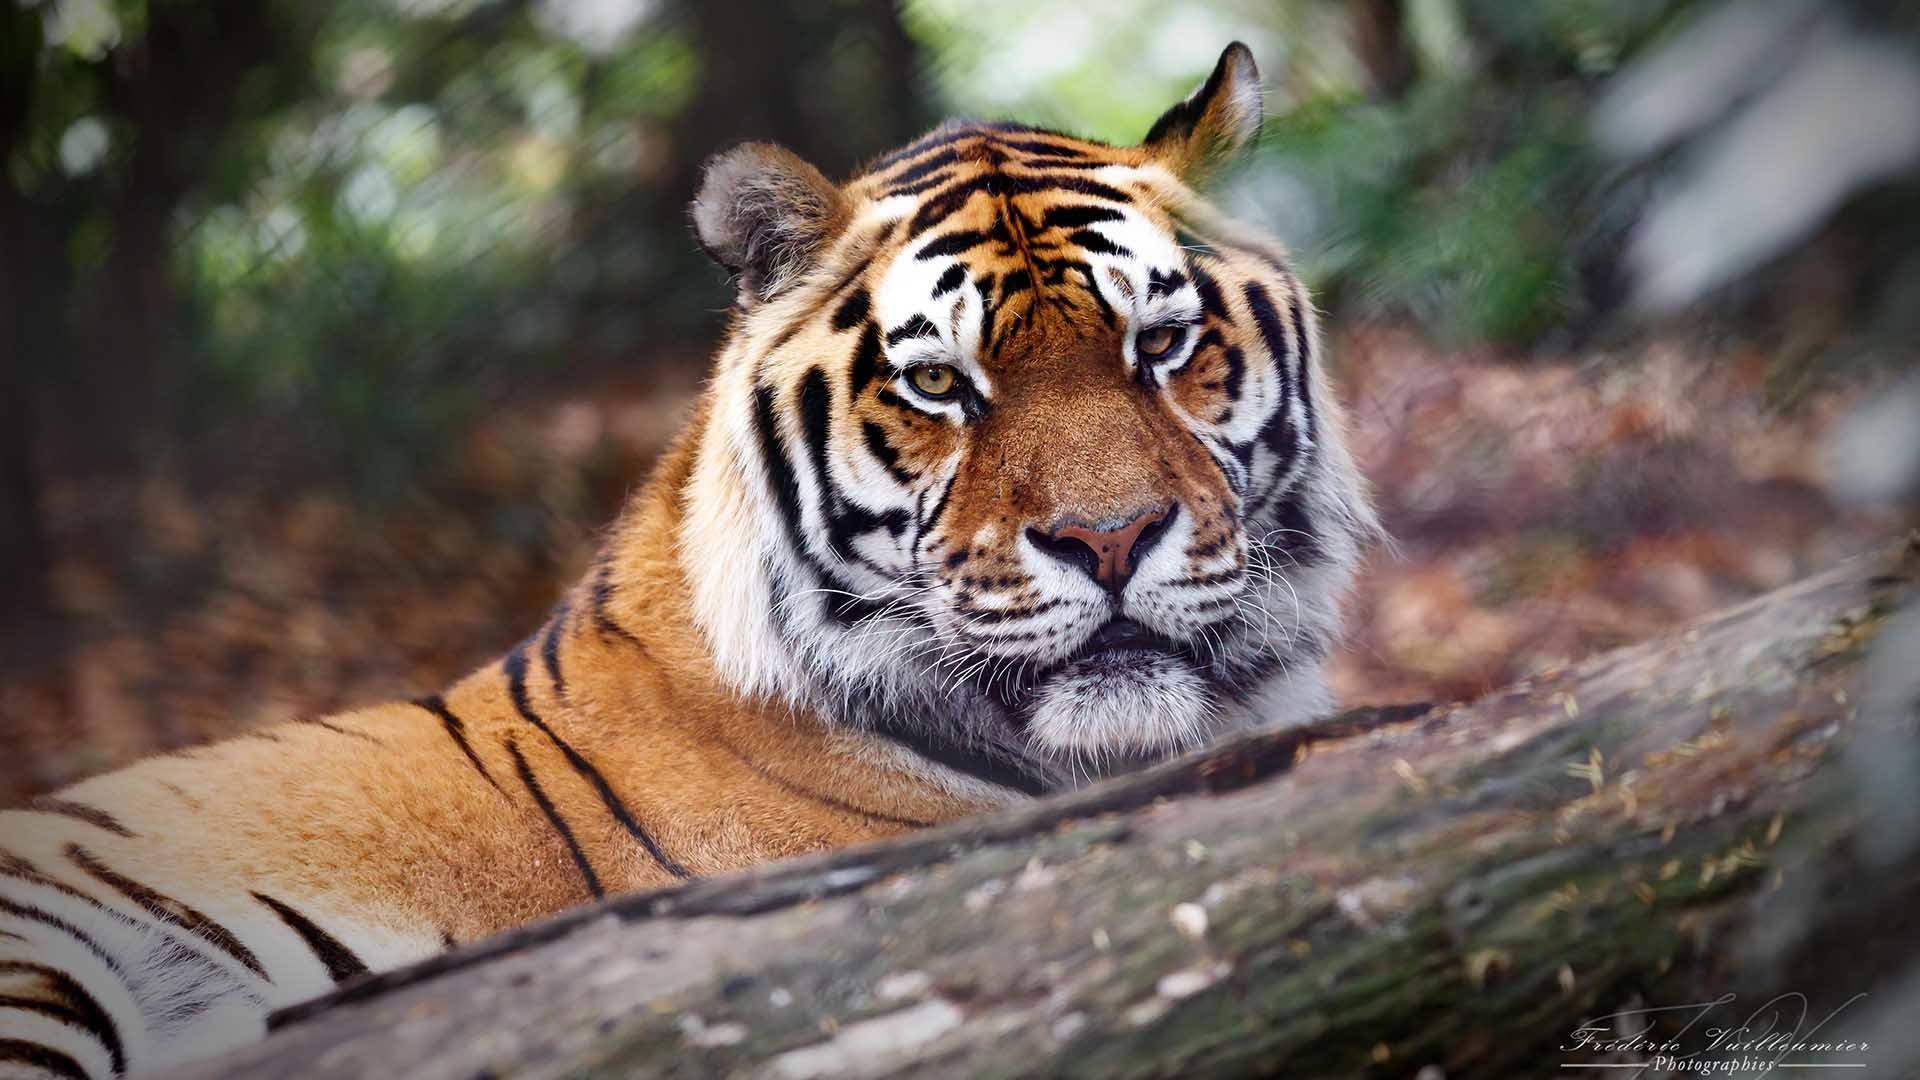 Journée découverte au zoo de Mulhouse : le tigre Baïkal par Frédéric Vuilleumier